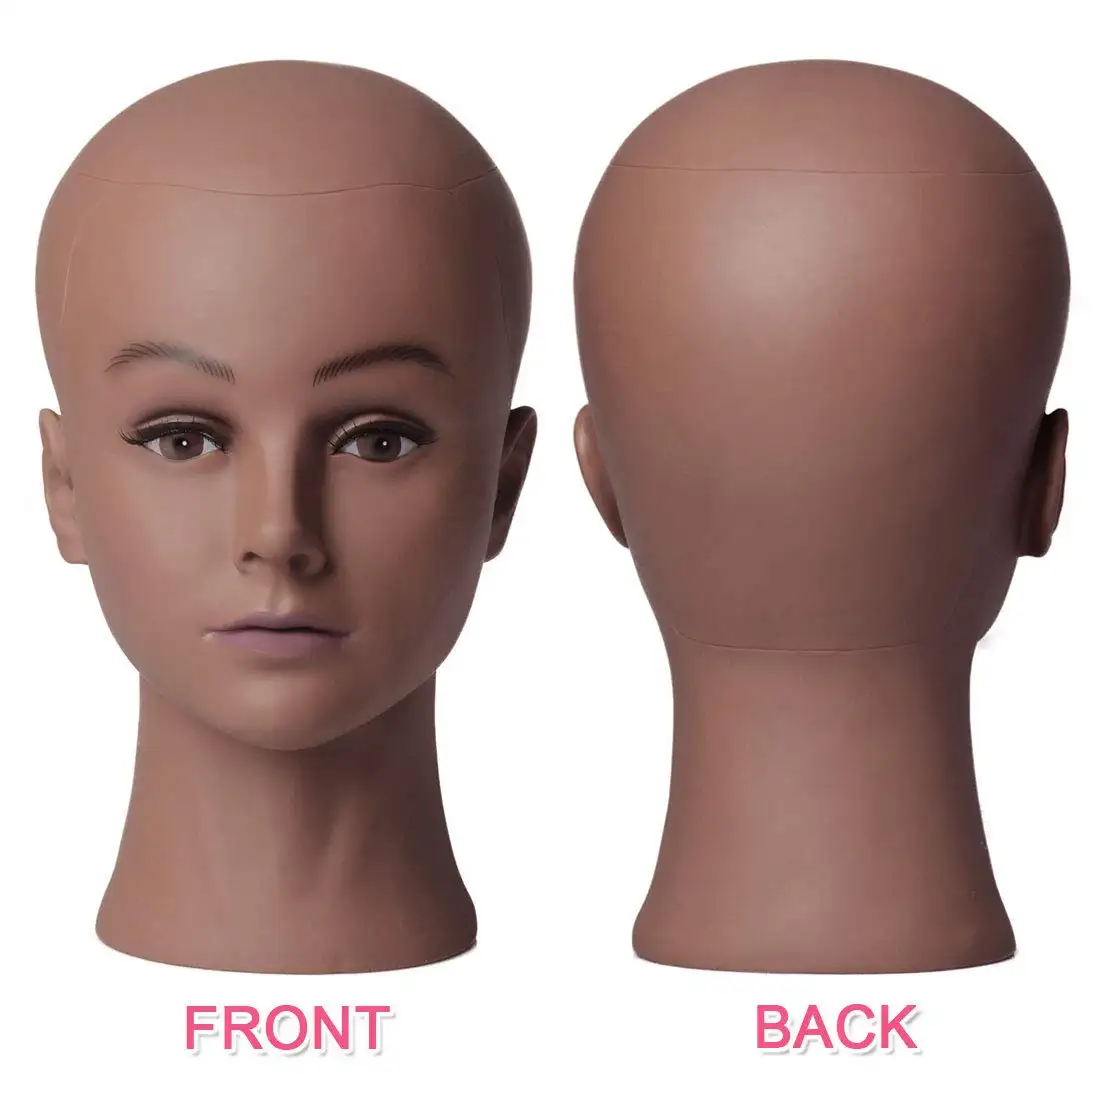 Манекен для косметологических тренировок, голова лысающего манекена, модель для парика, очков, шляпы, дисплей